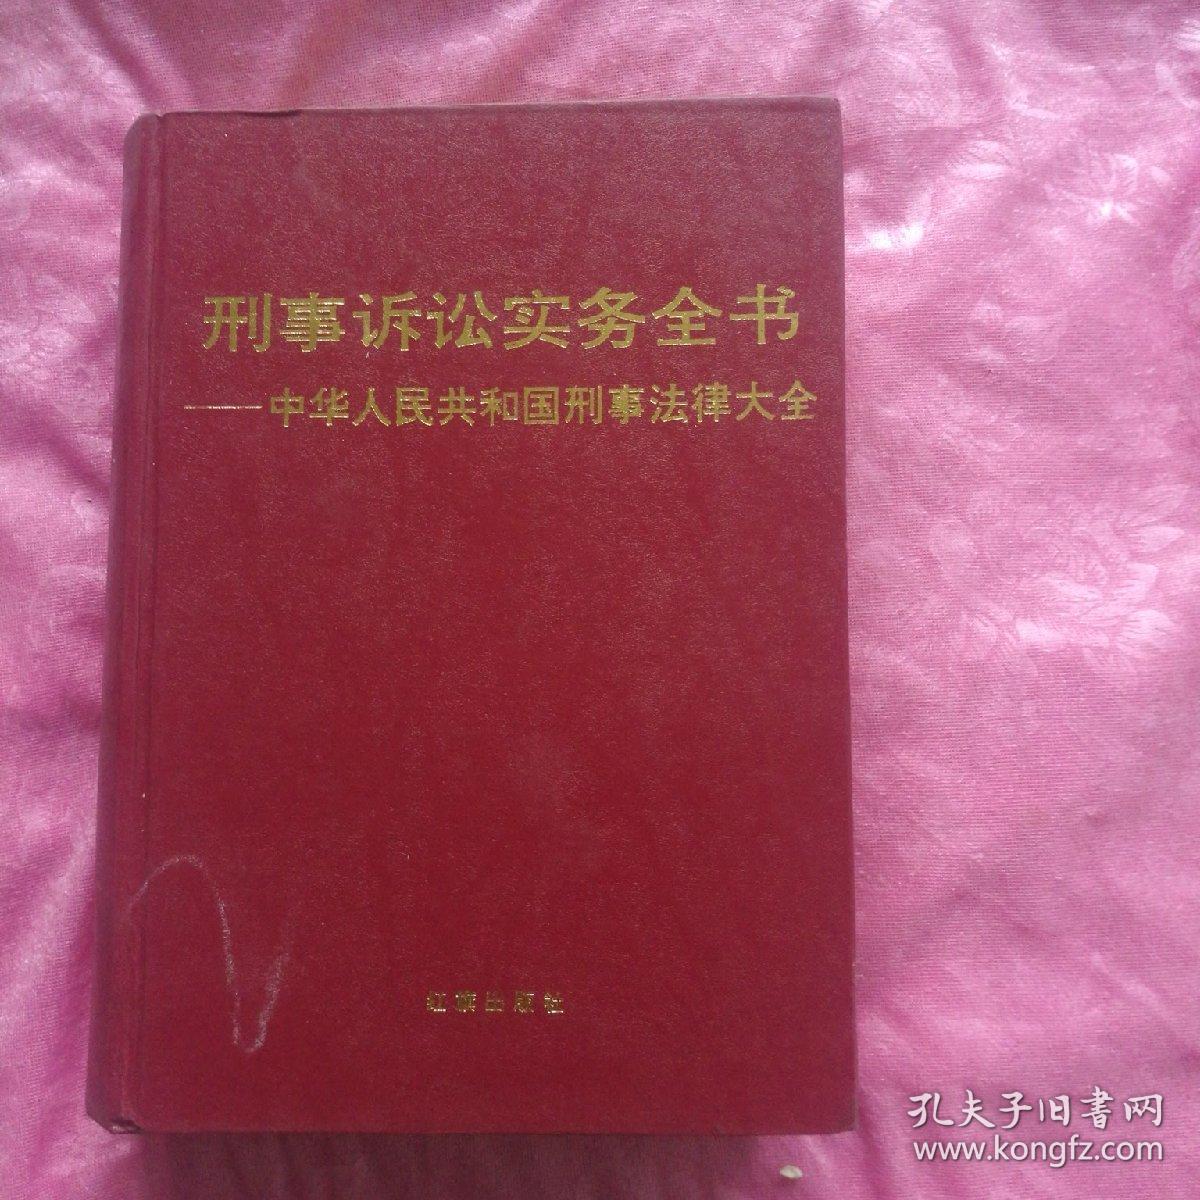 形式诉讼实务全书。中华人民共和国刑事法律大全。